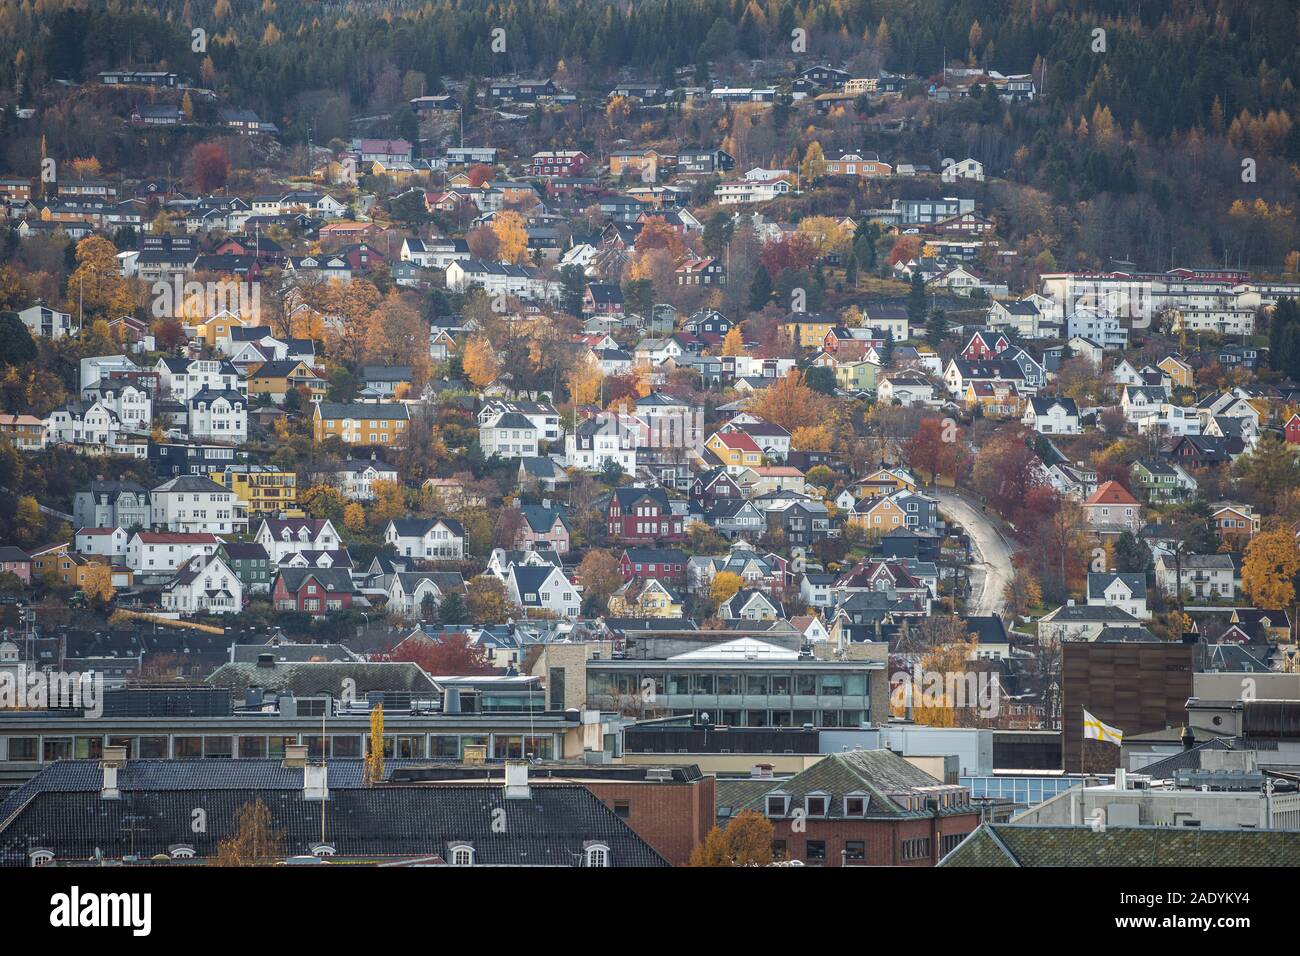 Architecture en bois scandinave, maisons colorées de Trondheim zone urbaine. Couleurs automnales. Banque D'Images